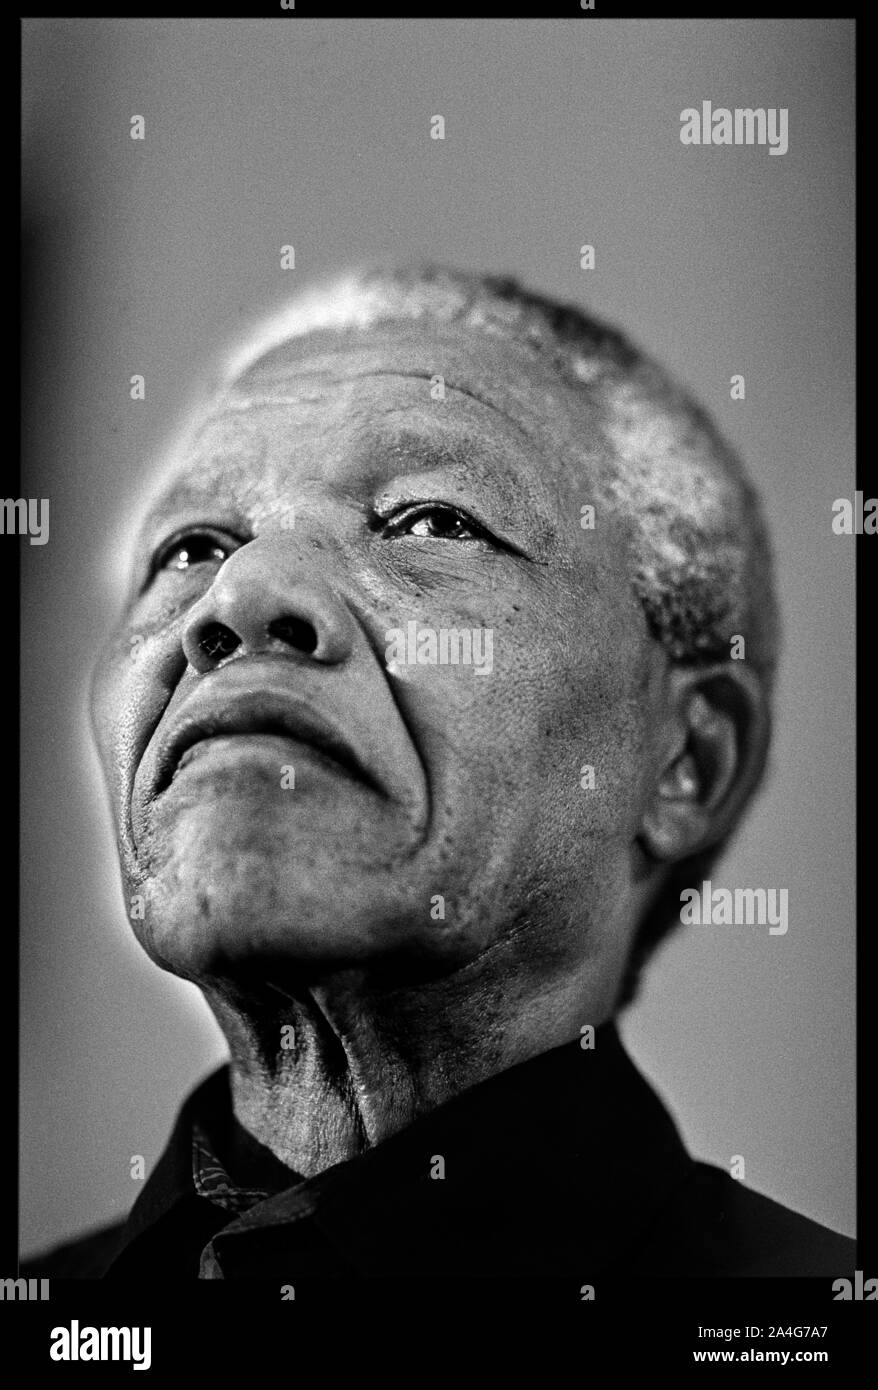 Nederland Johannesburg Nelson Mandela über ein Treffen mit ANC 31-01-1994 Foto Jaco Klamer Stockfoto